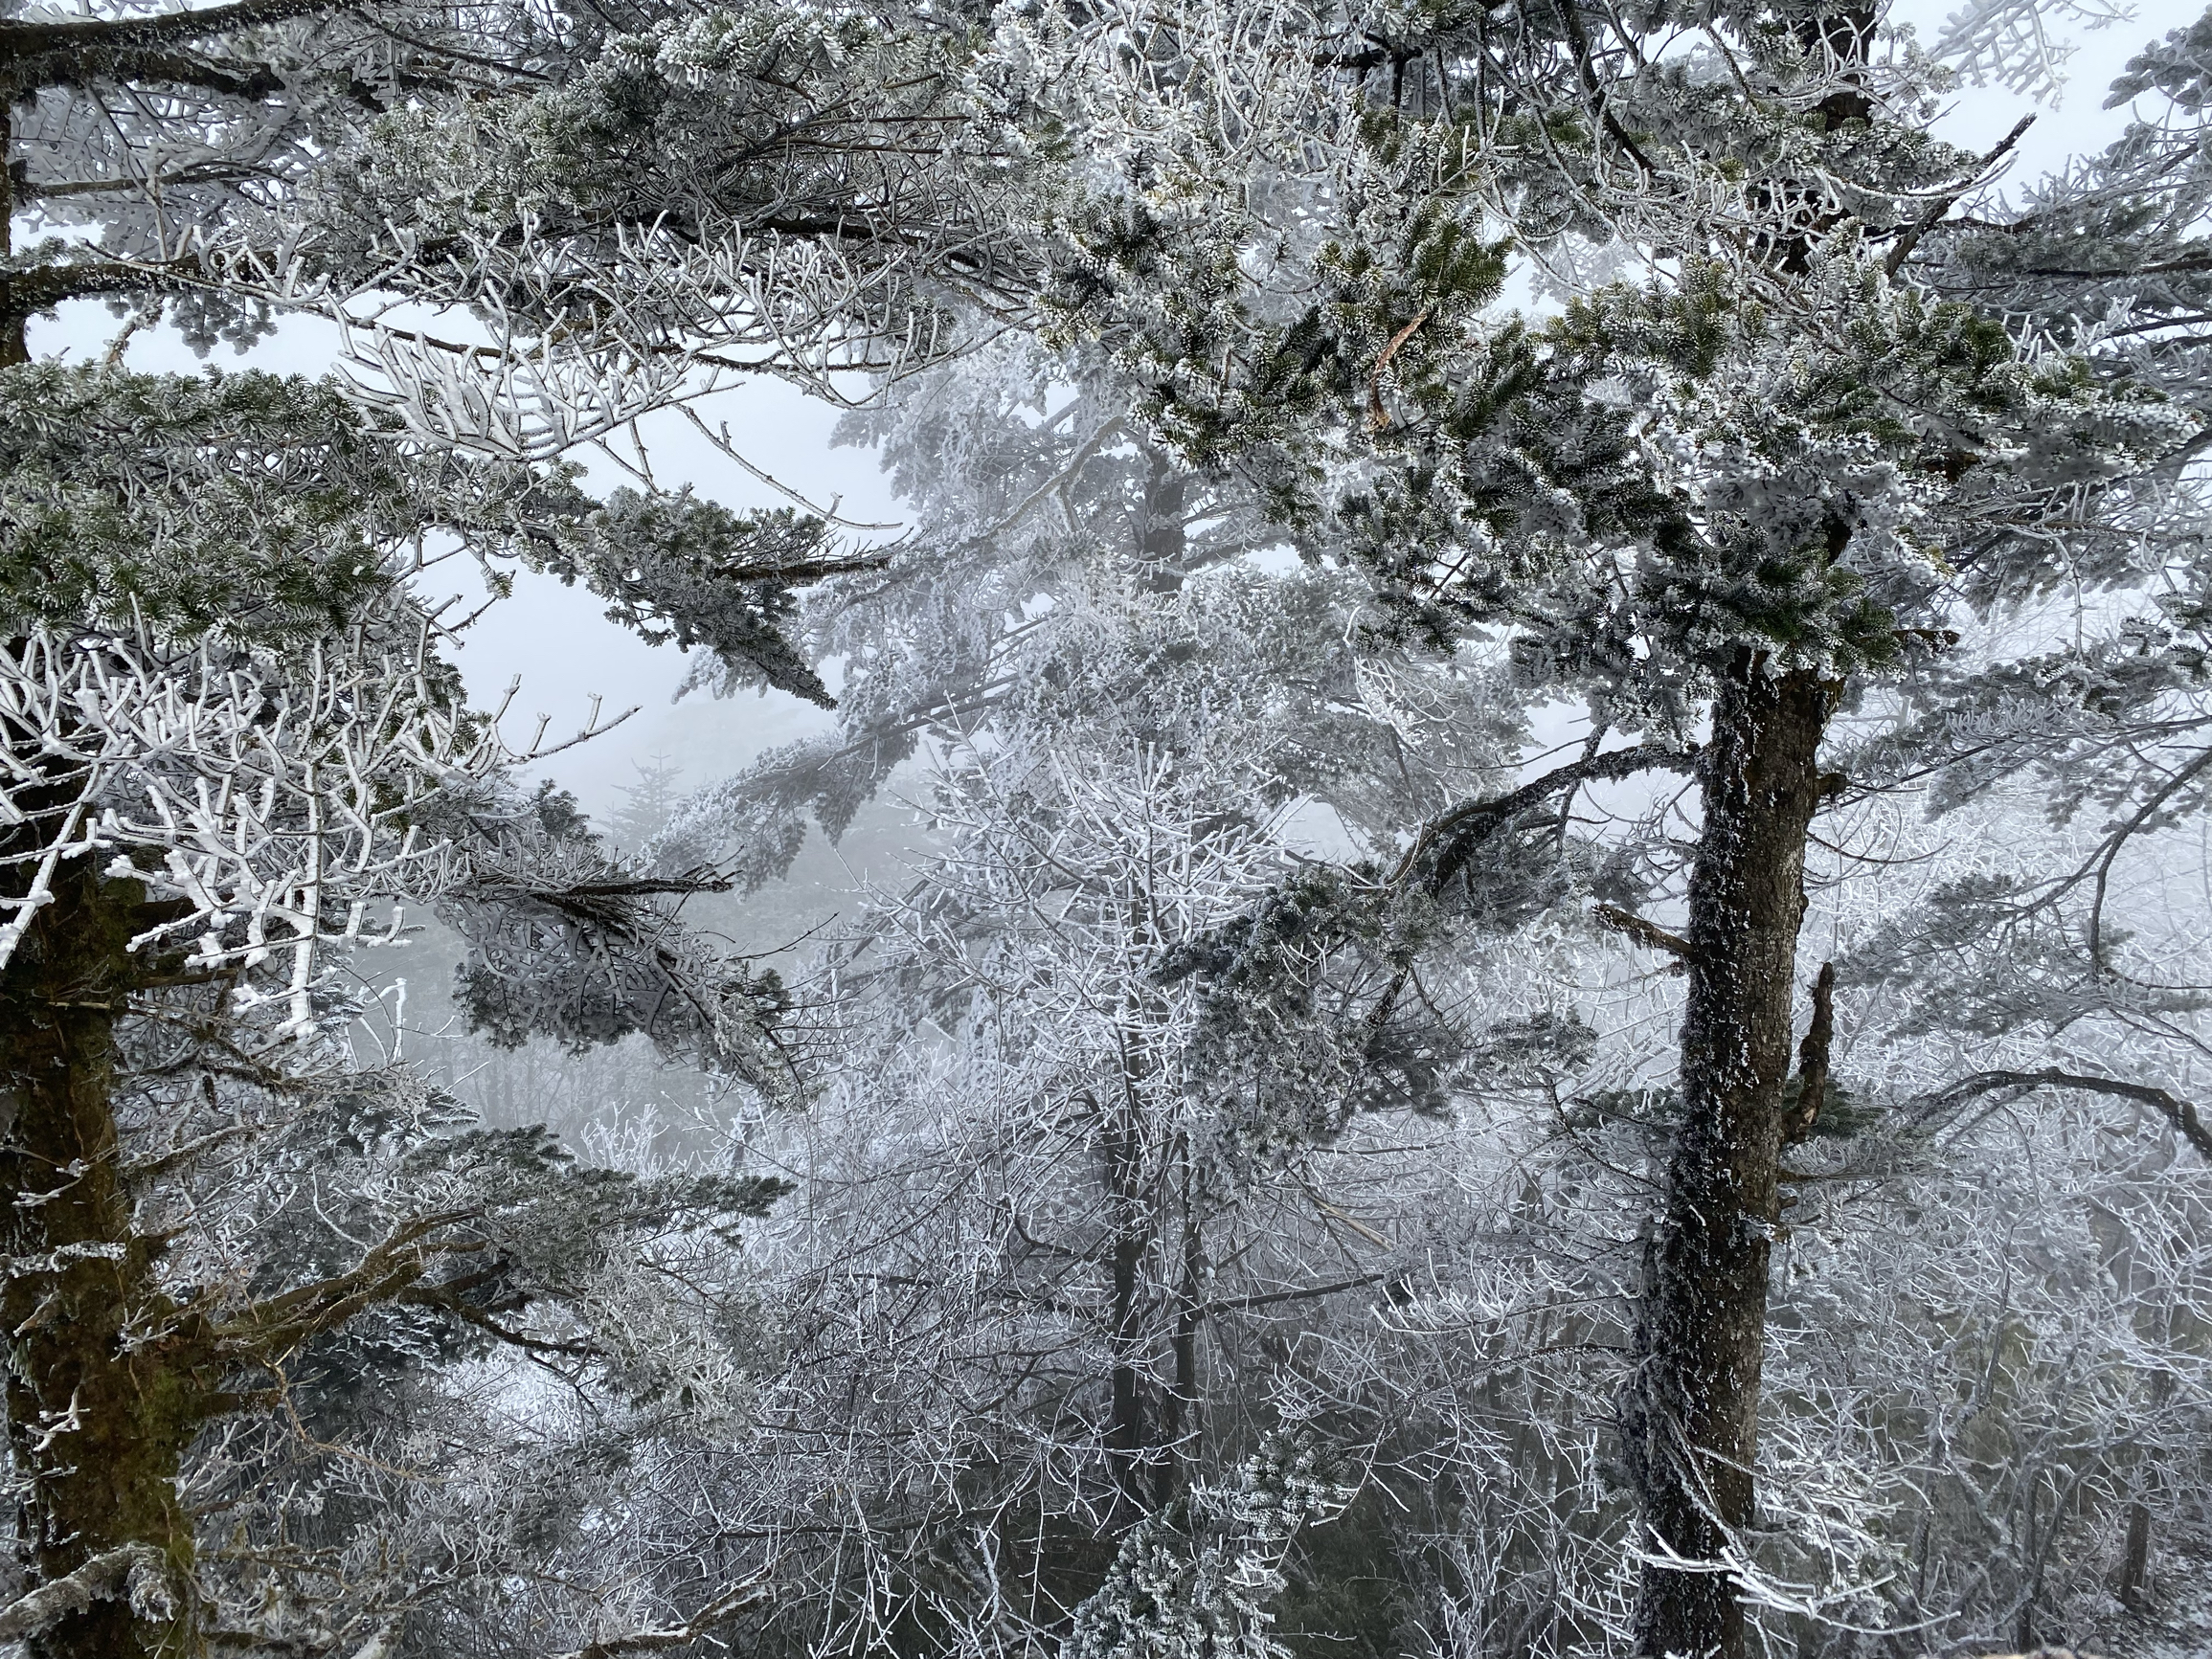 #南方人看雪去哪里  峨眉山 峨眉山 是个不错的选择 雾淞冰挂美不胜收，步行的一段只有1.5公里，也